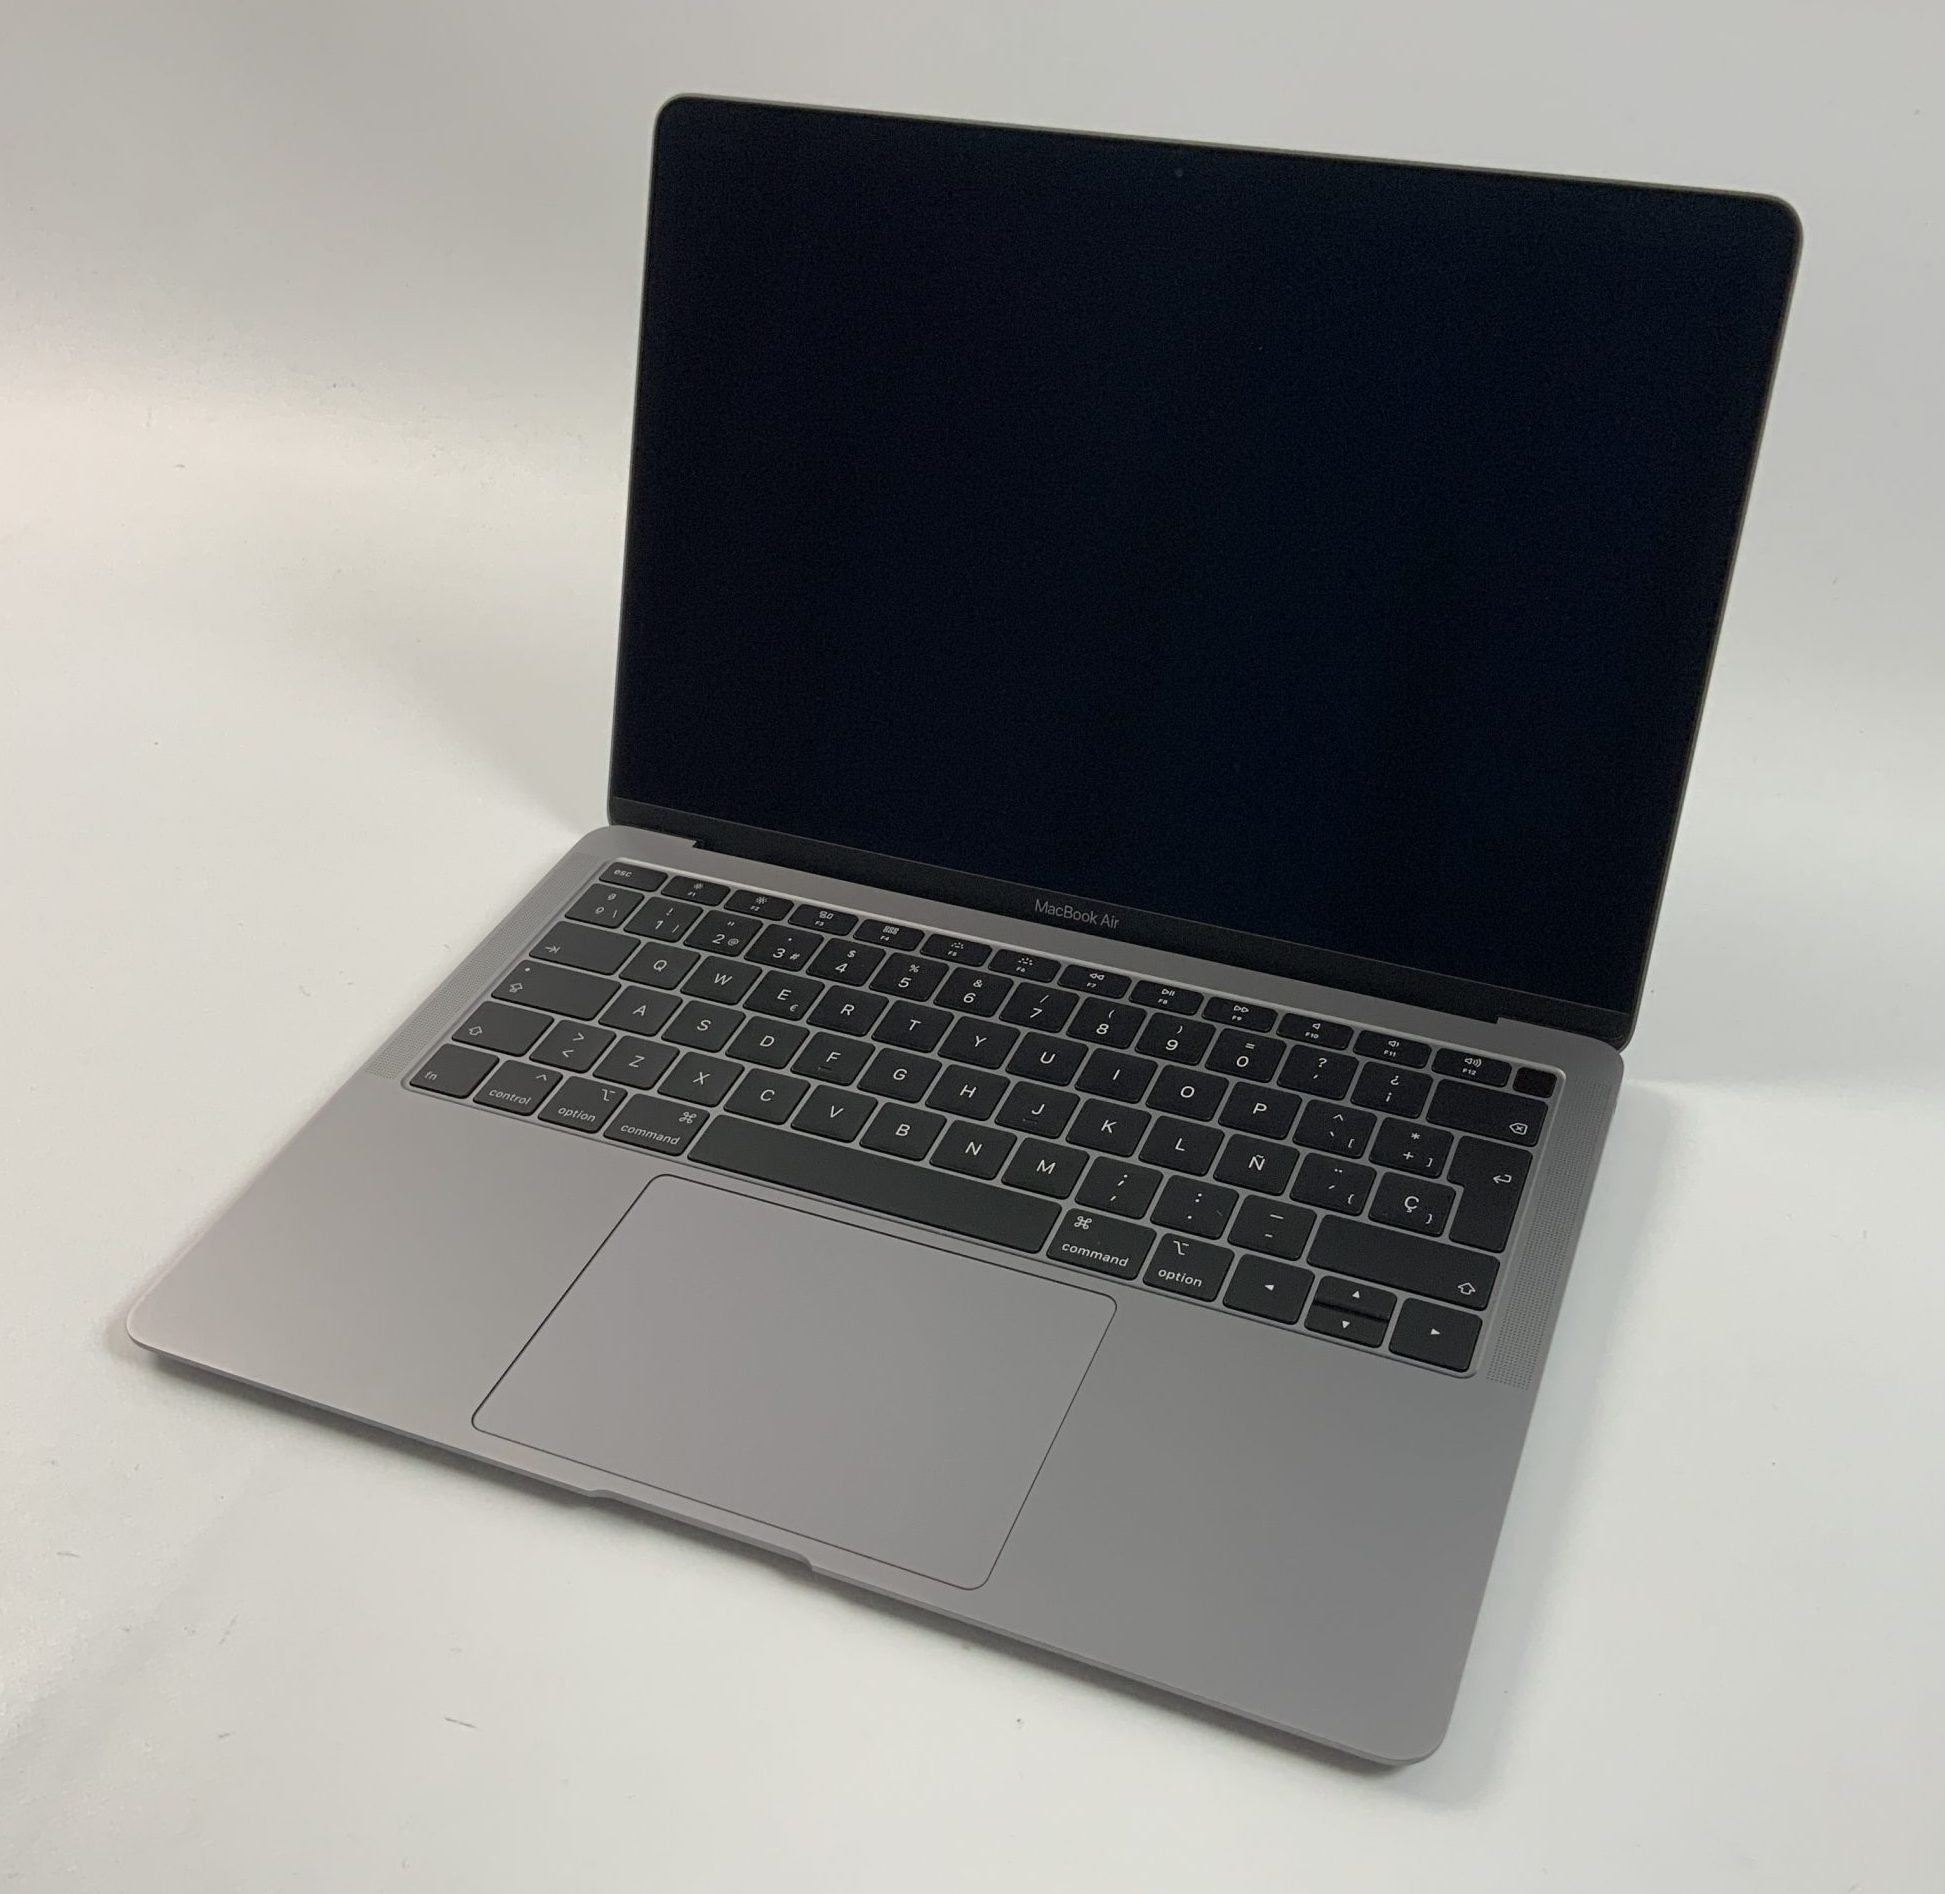 MacBook Air 13" Late 2018 (Intel Core i5 1.6 GHz 16 GB RAM 256 GB SSD), Space Gray, Intel Core i5 1.6 GHz, 16 GB RAM, 256 GB SSD, imagen 1